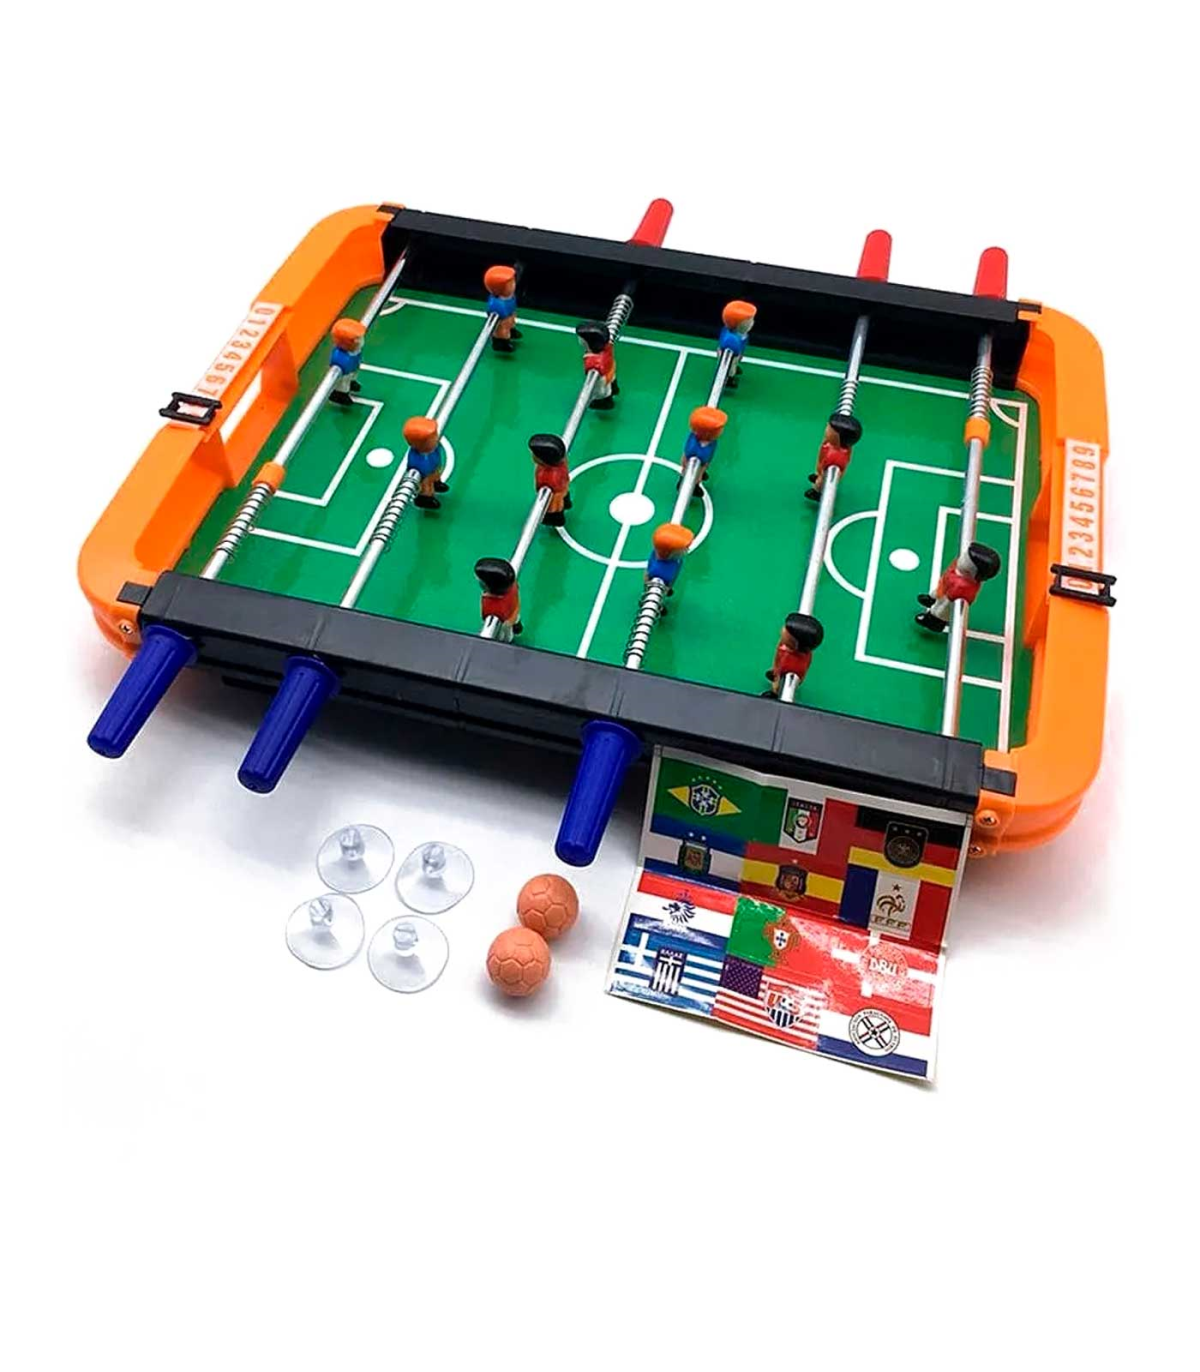 Tradineur - Futbolín de juguete - Fabricación en metal y plástico